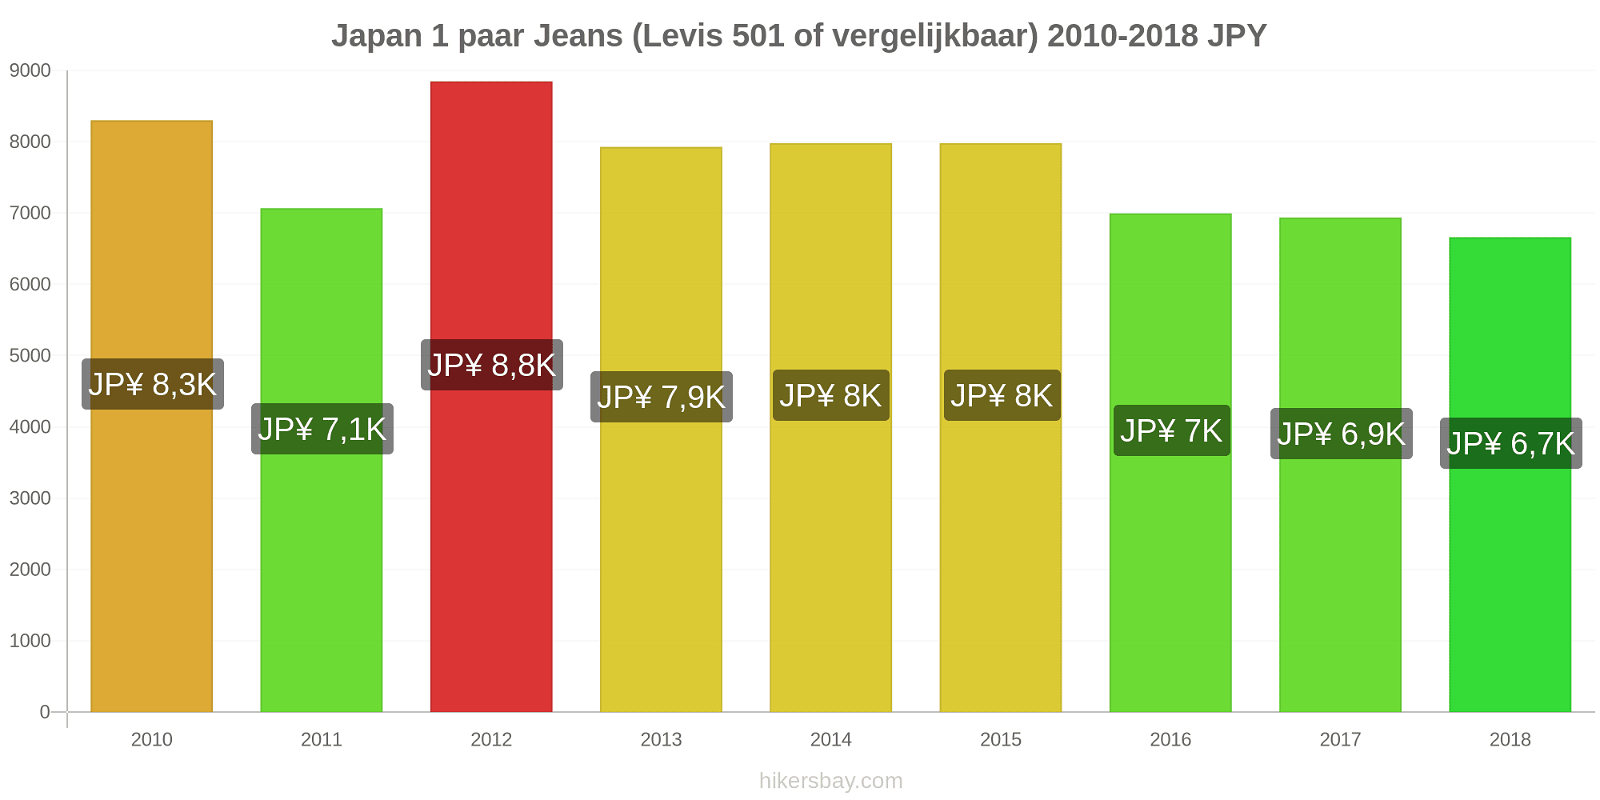 Japan prijswijzigingen 1 paar jeans (Levis 501 of vergelijkbaar) hikersbay.com